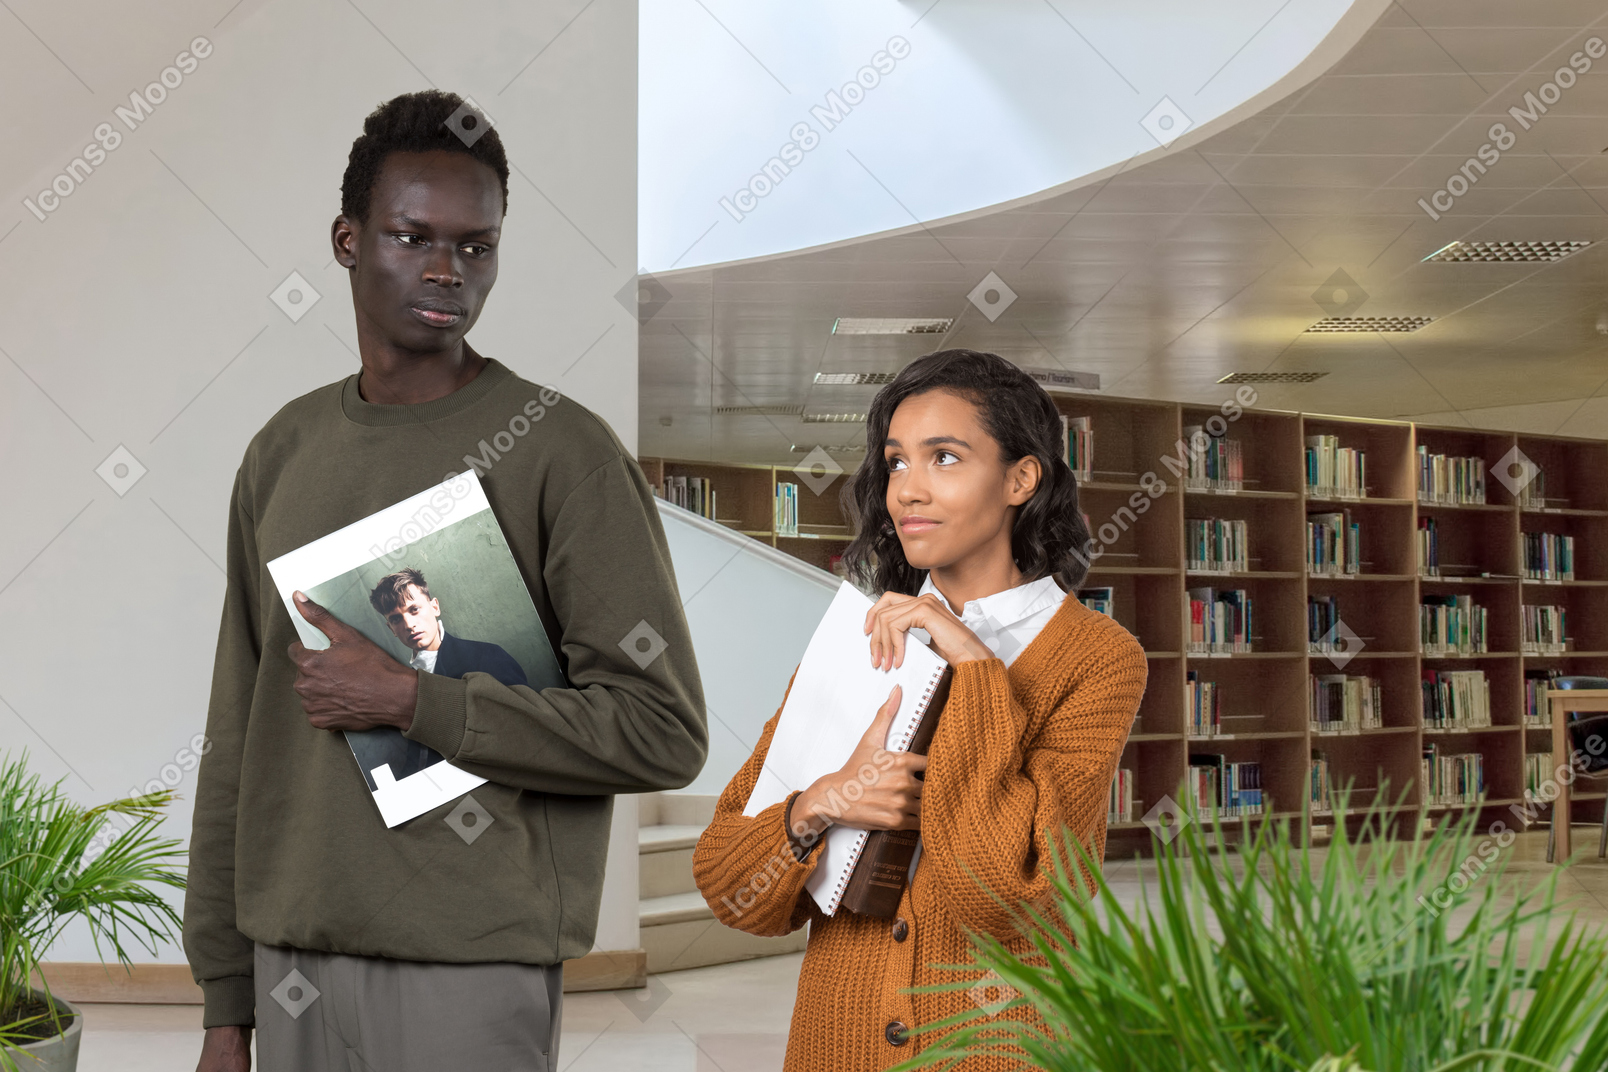 Черная скромно одетая женщина с книгами в руках с любовью смотрит на серьезного темнокожего мужчину в библиотеке, который не замечает ее взгляда